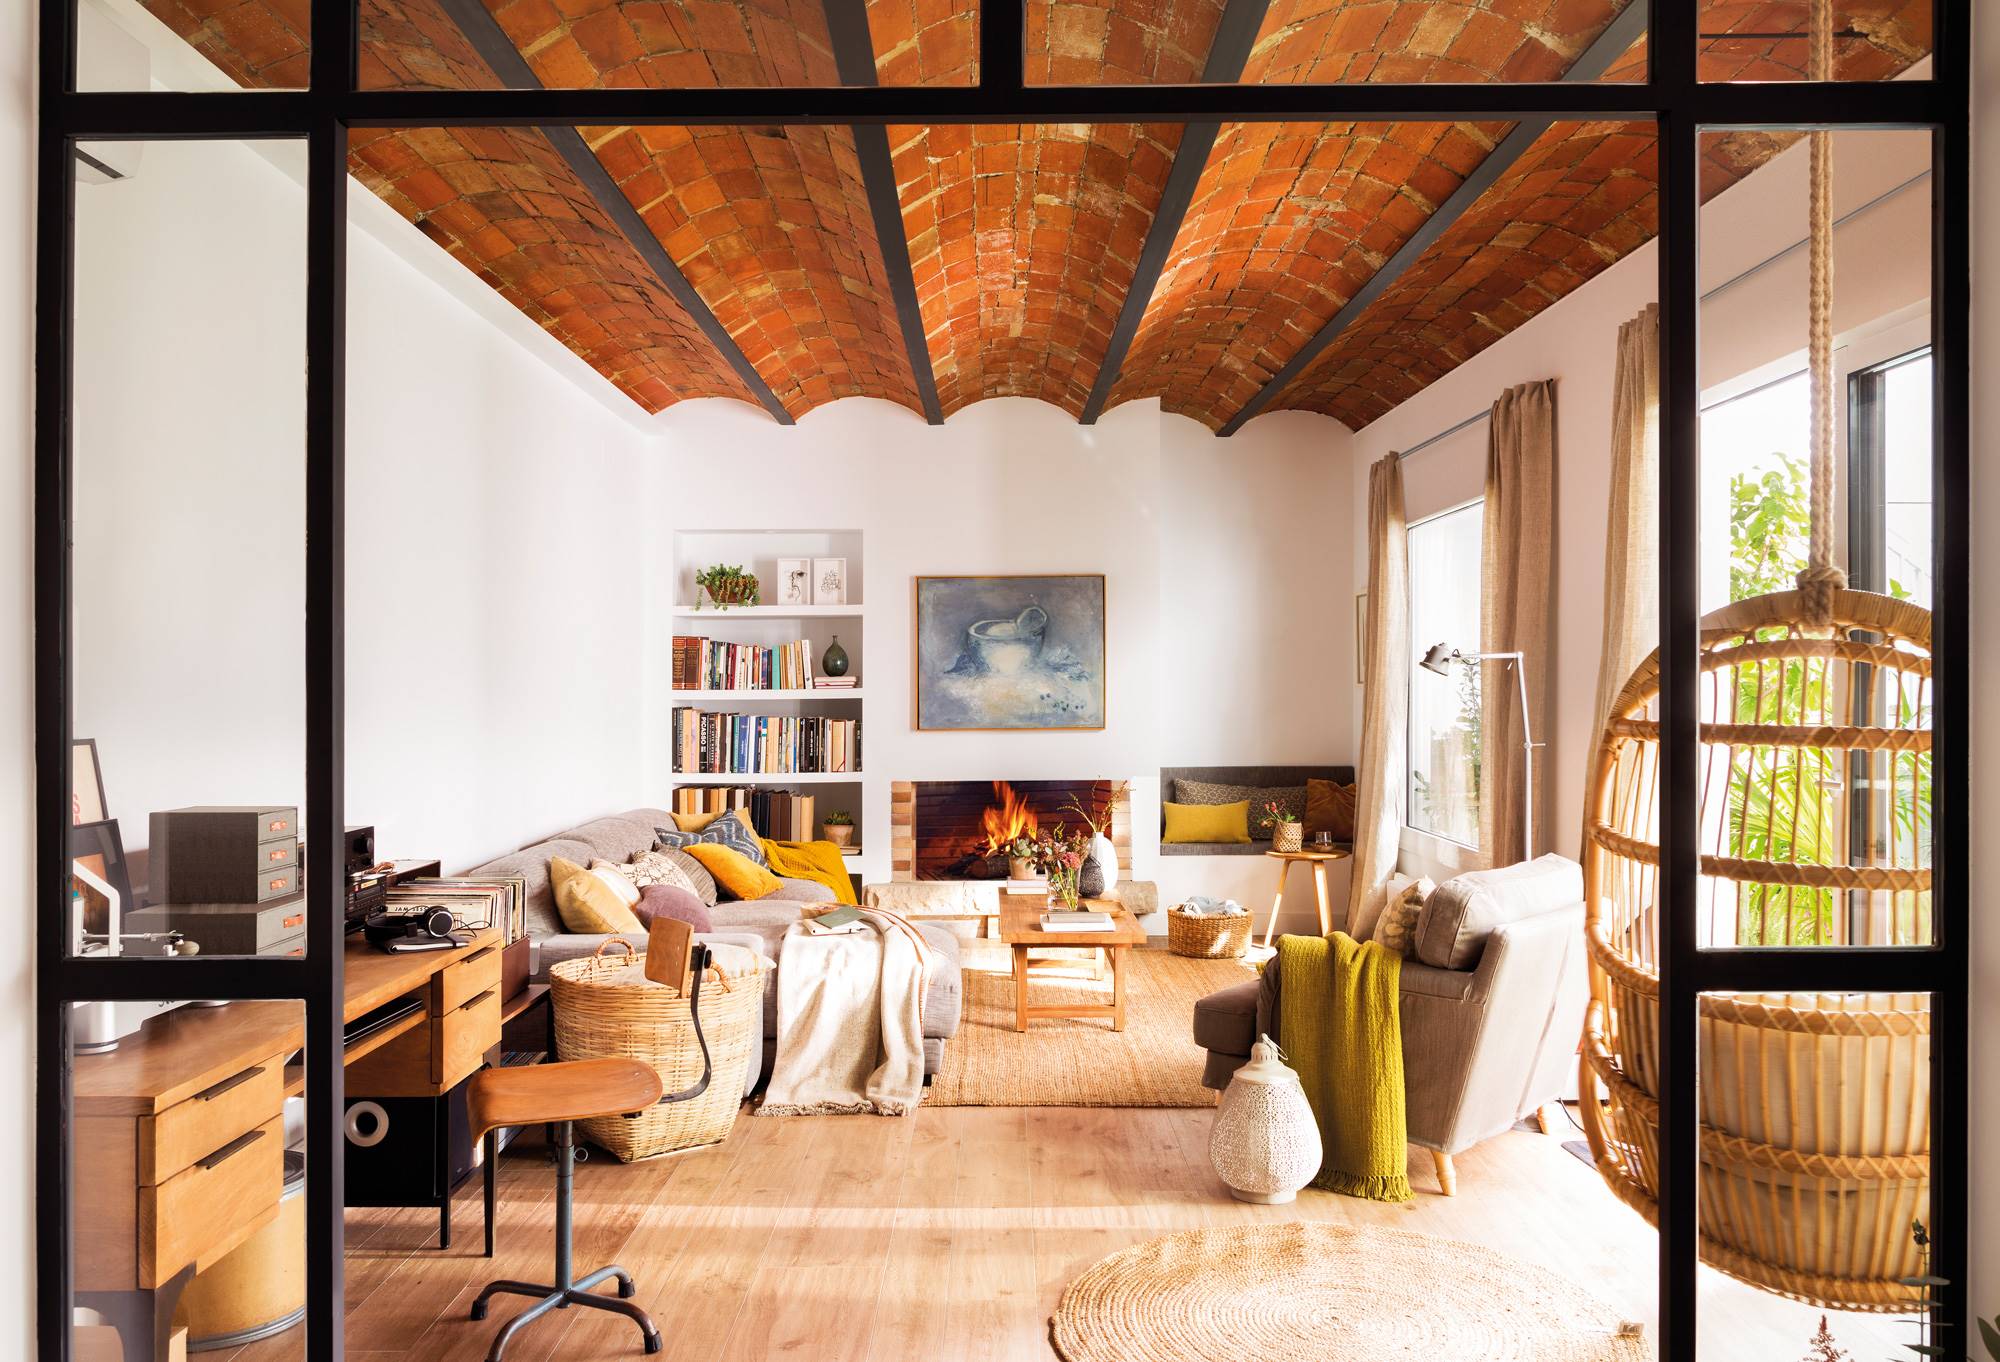 Salón de estilo industrial con chimenea, techo de bóveda catalana, sofá con chaise longue, columpio de ratán, escritorio y cerramiento de cristal 00472314